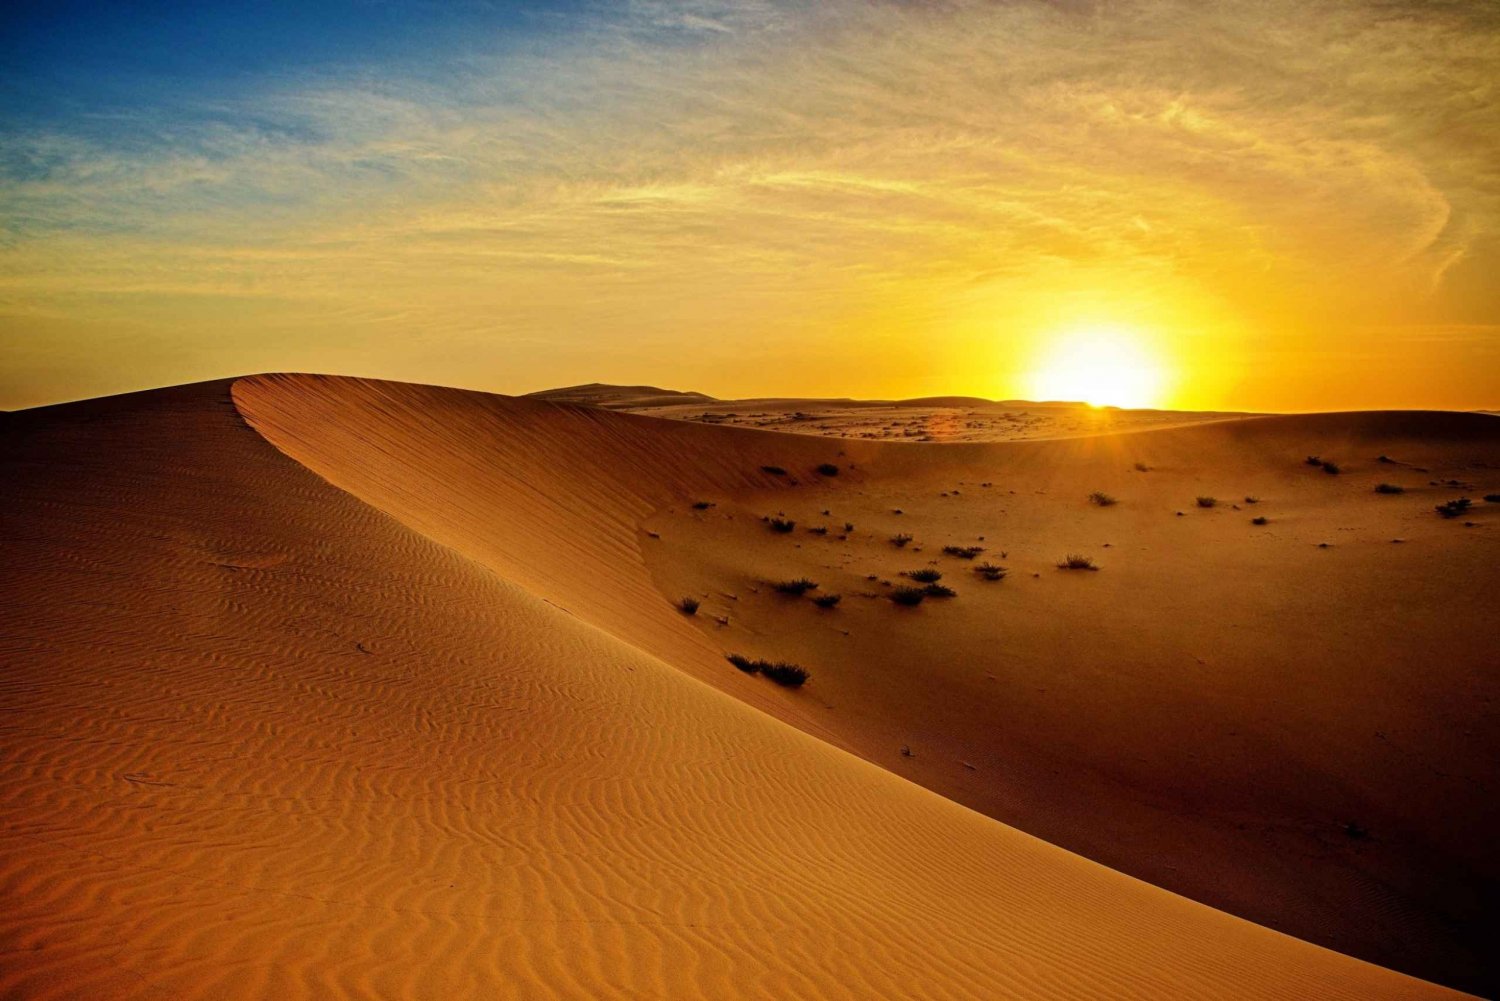 Dubai: Ørkenjeepsafari ved solopgang med dyreliv